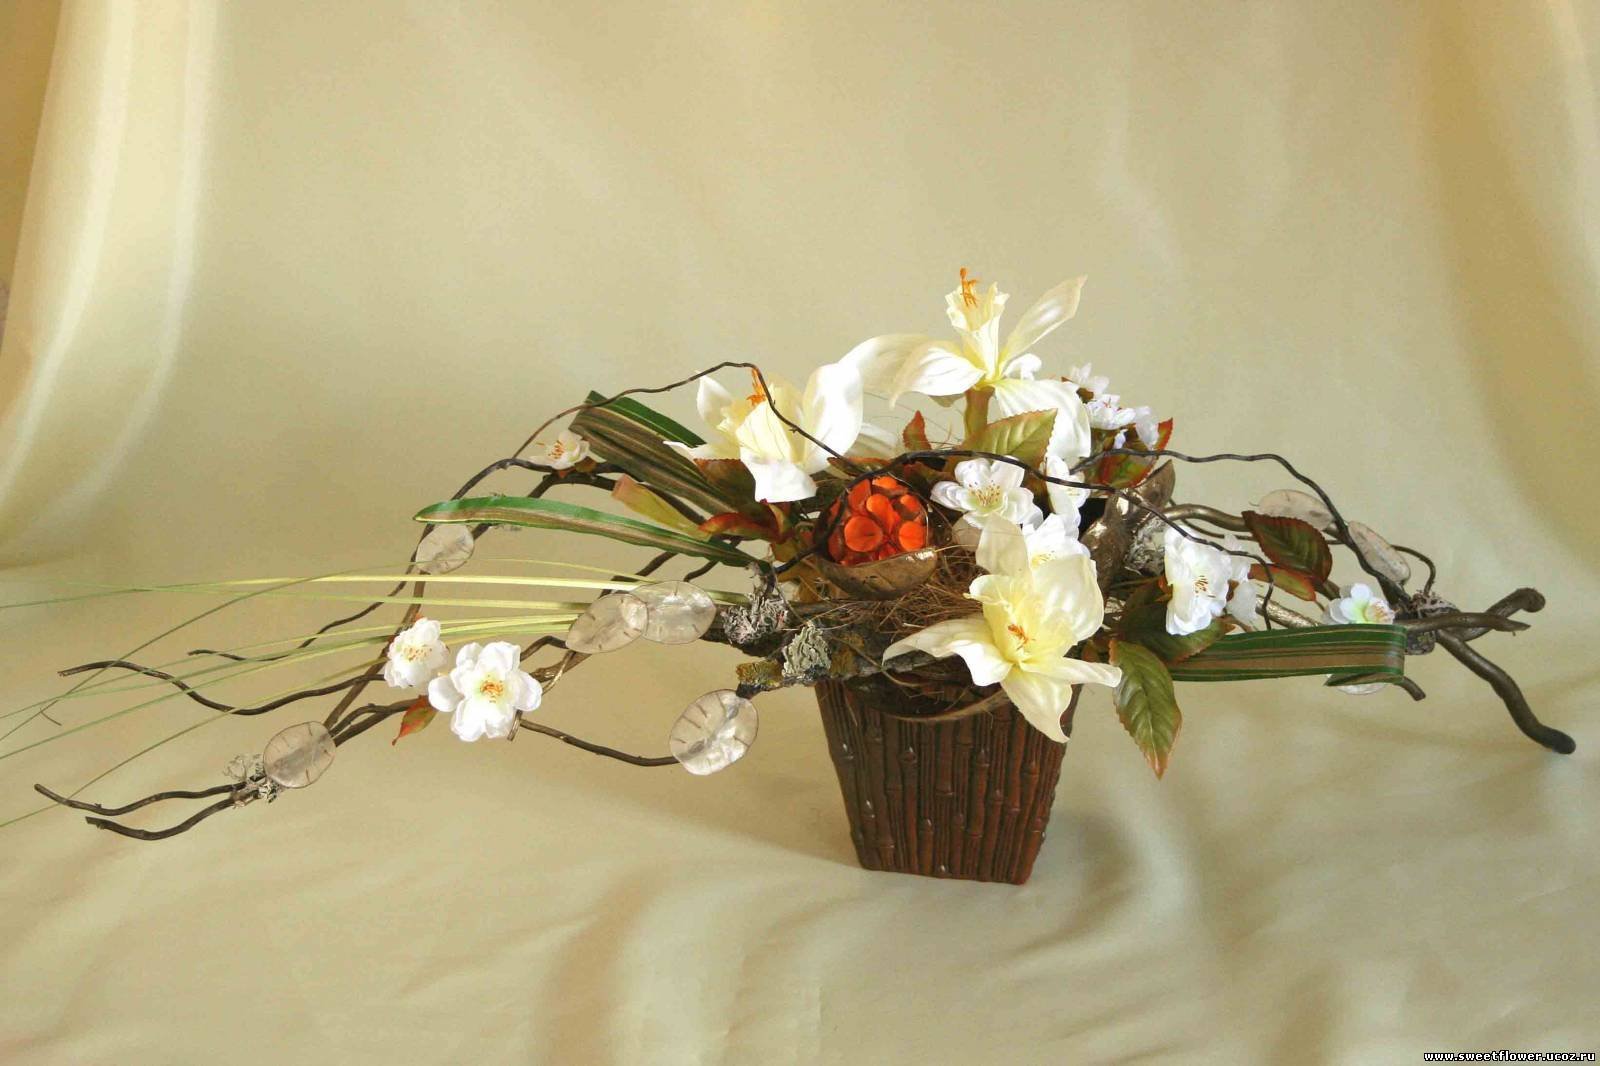 Можно ли дарить живым людям искусственные цветы. Морибана Икебана. Экибана Весенняя композиция. Фитодизайн Икебана. Весенняя экибана Япония.